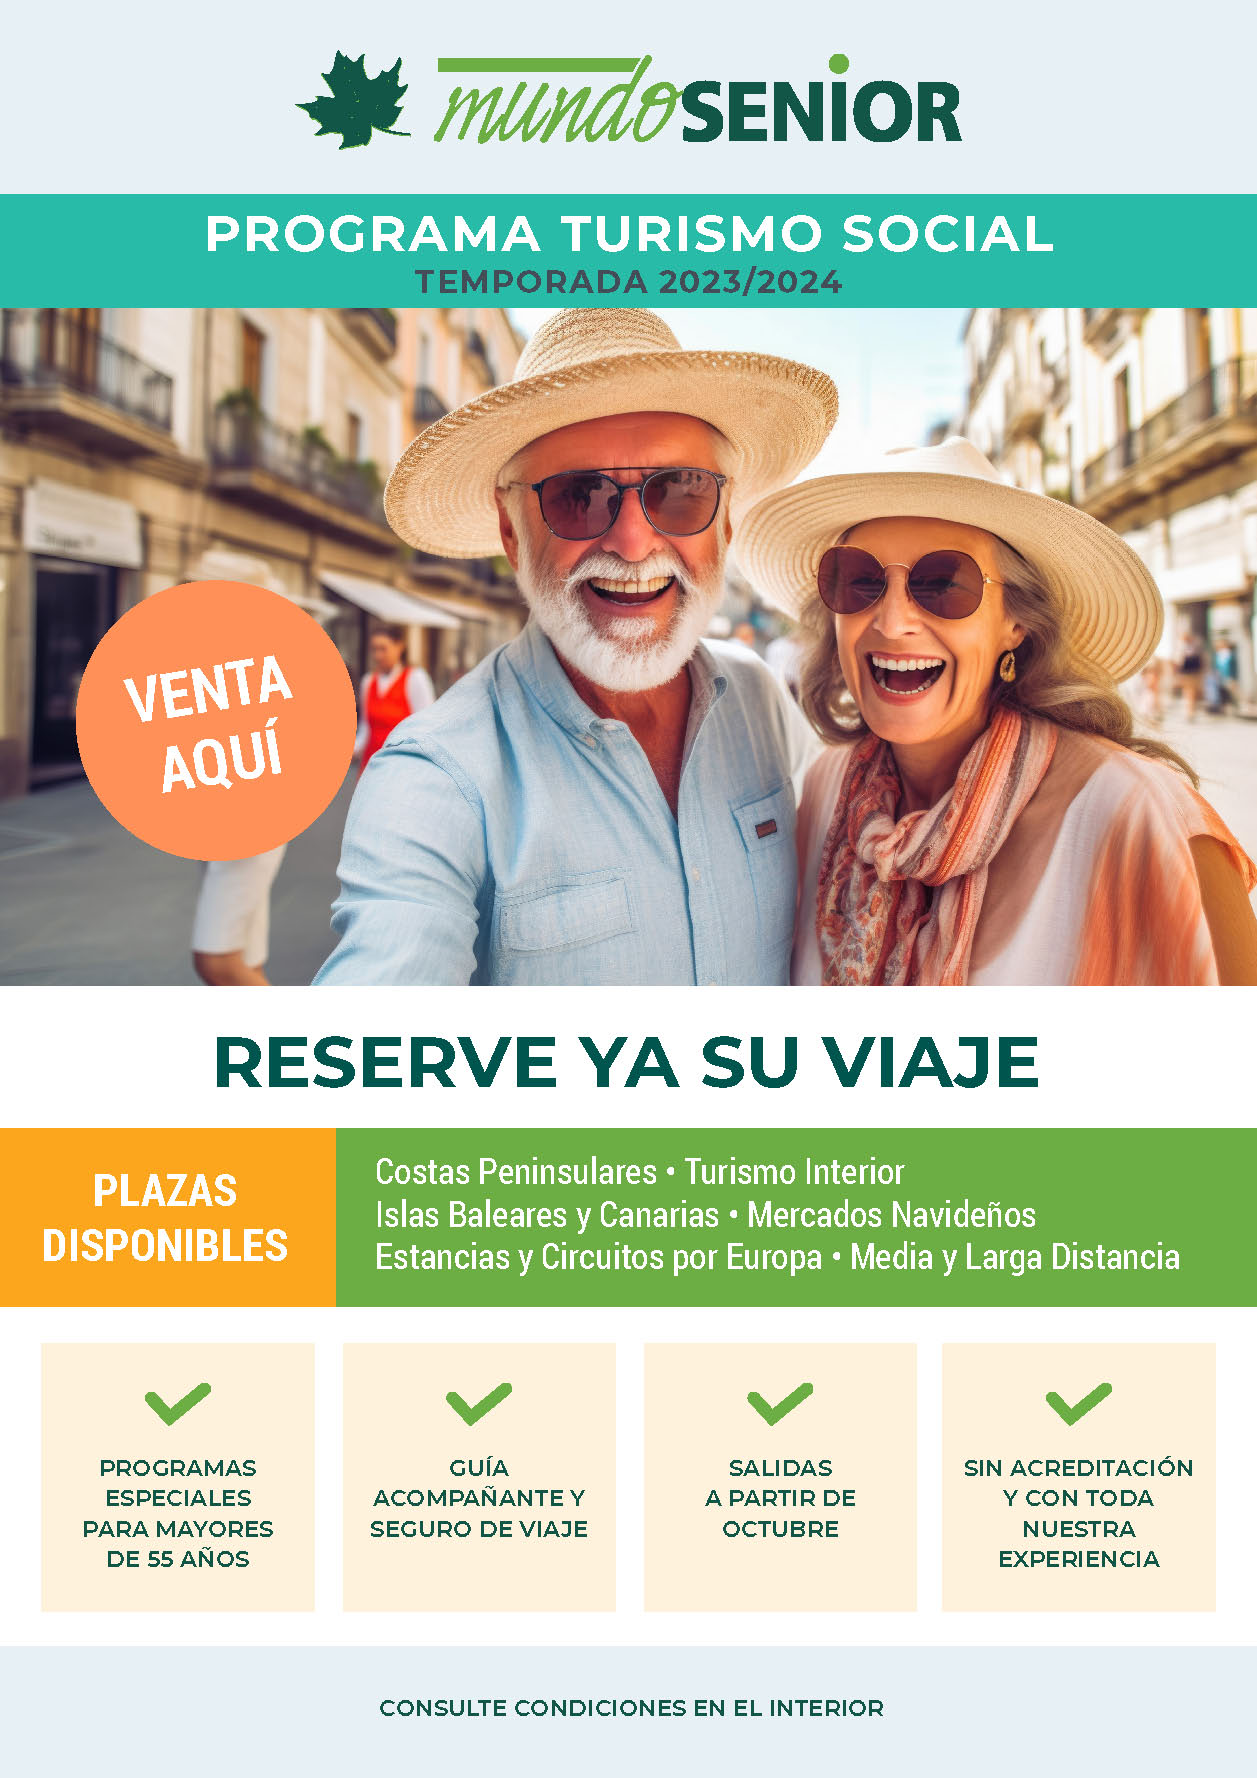 Ofertas Mundo Senior Turismo Social 2023-2024 Vacaciones en España y Circuitos Internacionales